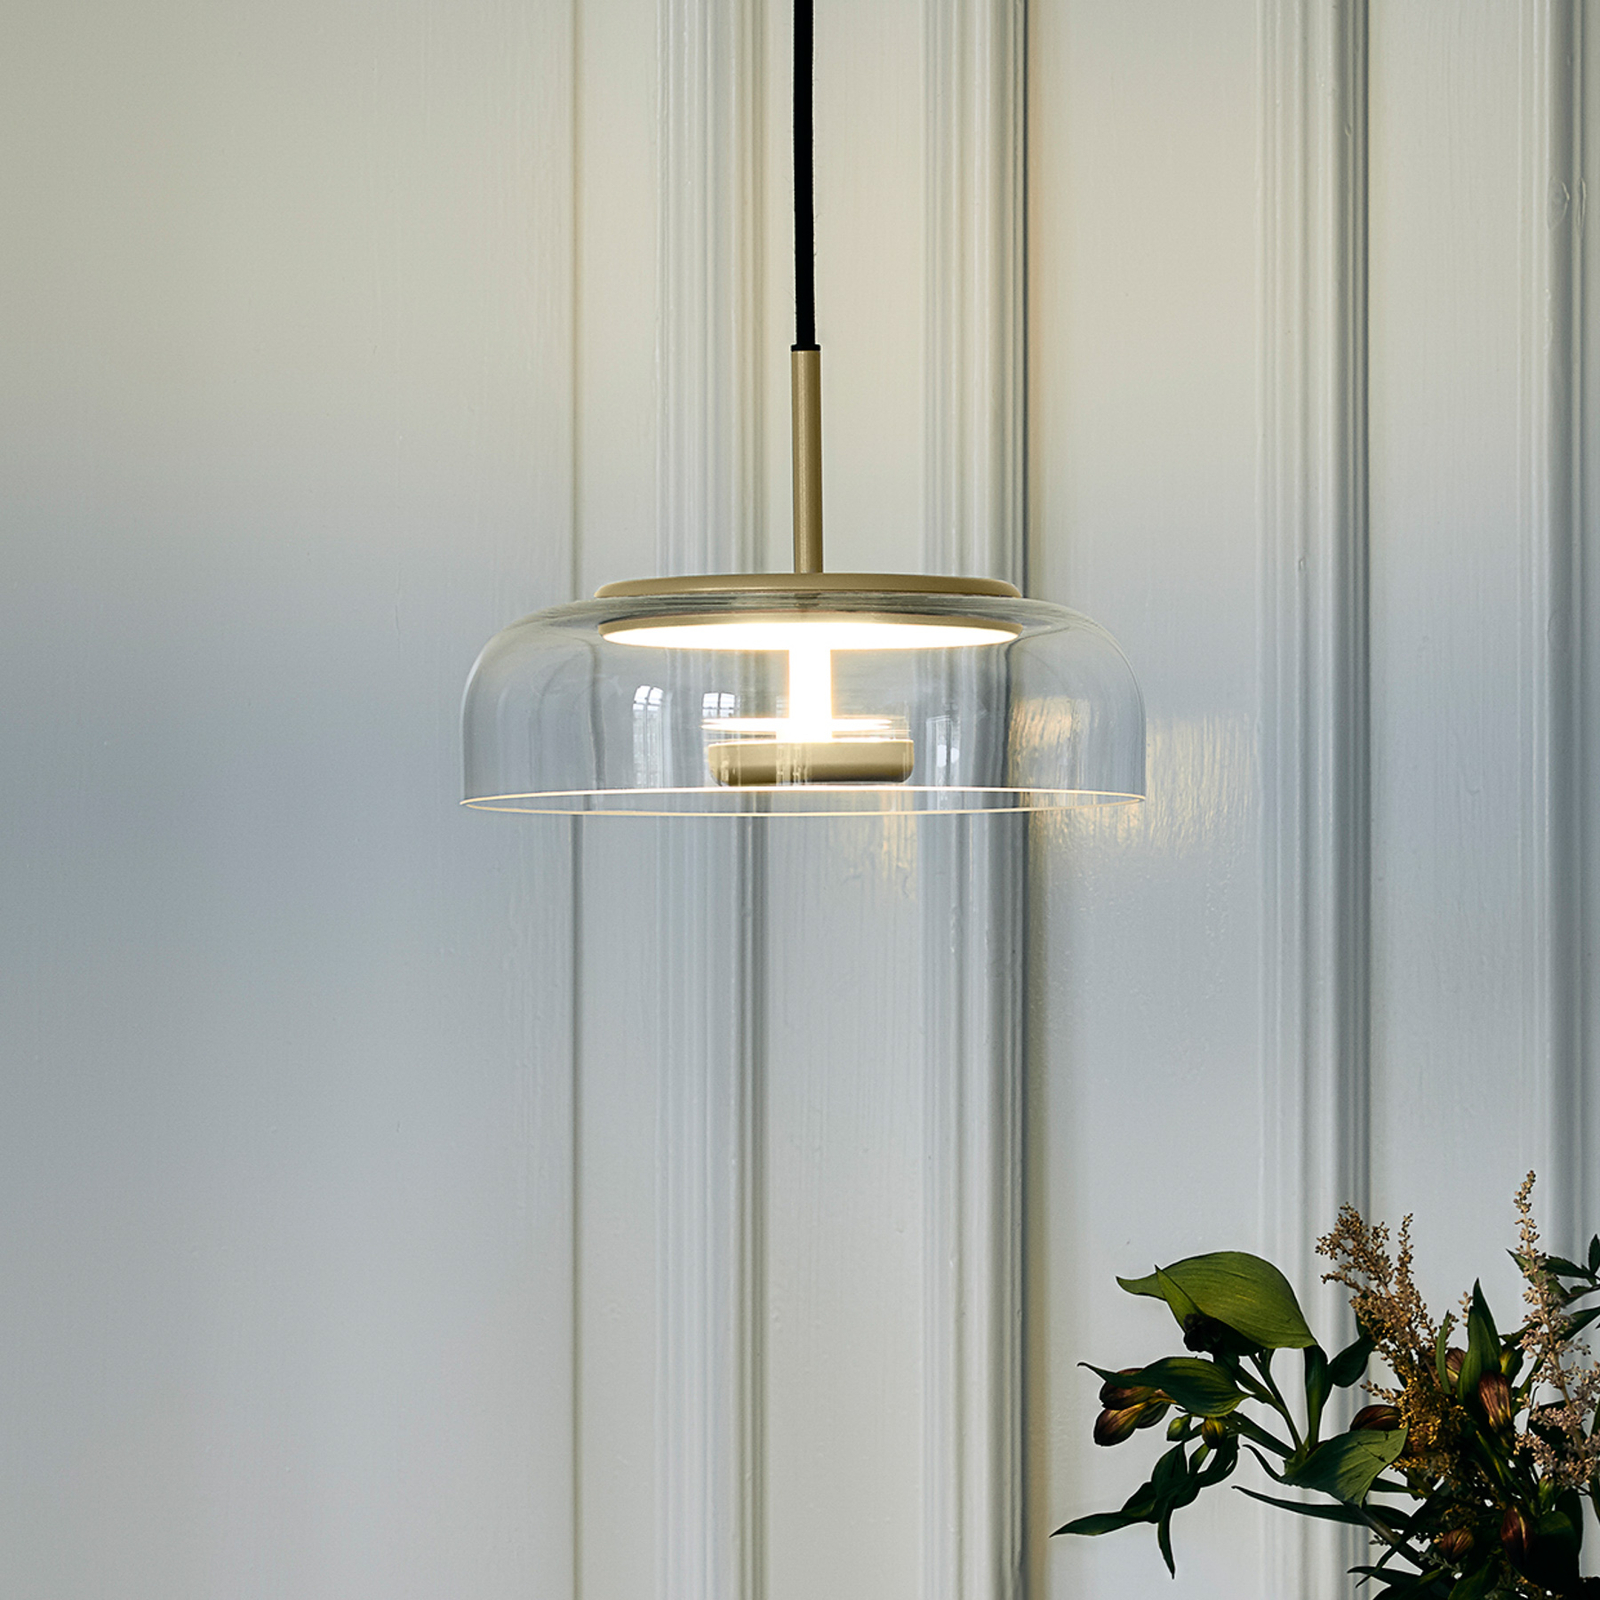 Nuura hanglamp Blossi 1, goud / helder, Ø 23 cm, glas